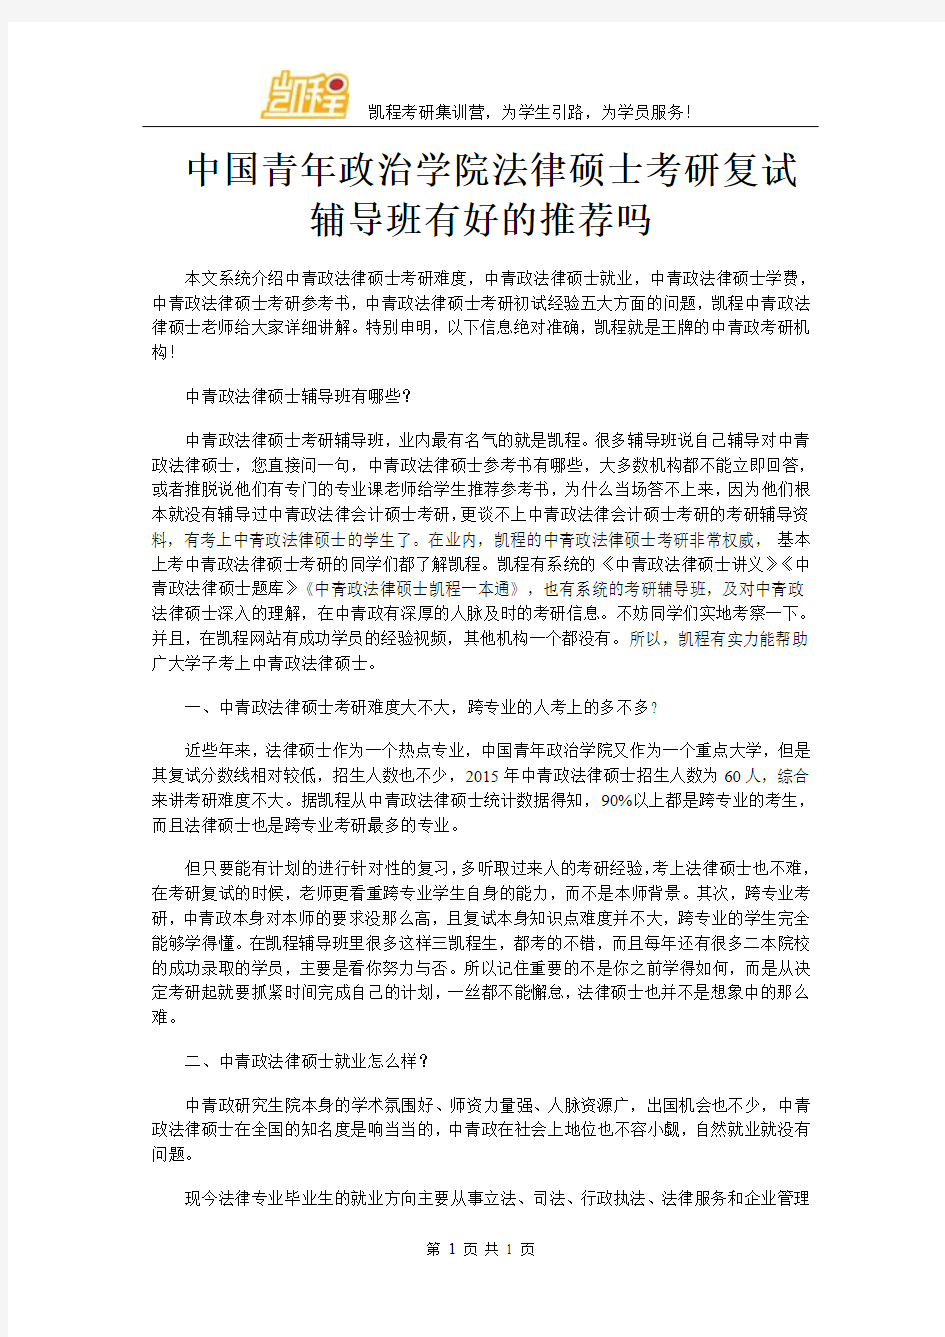 中国青年政治学院法律硕士考研复试辅导班有好的推荐吗